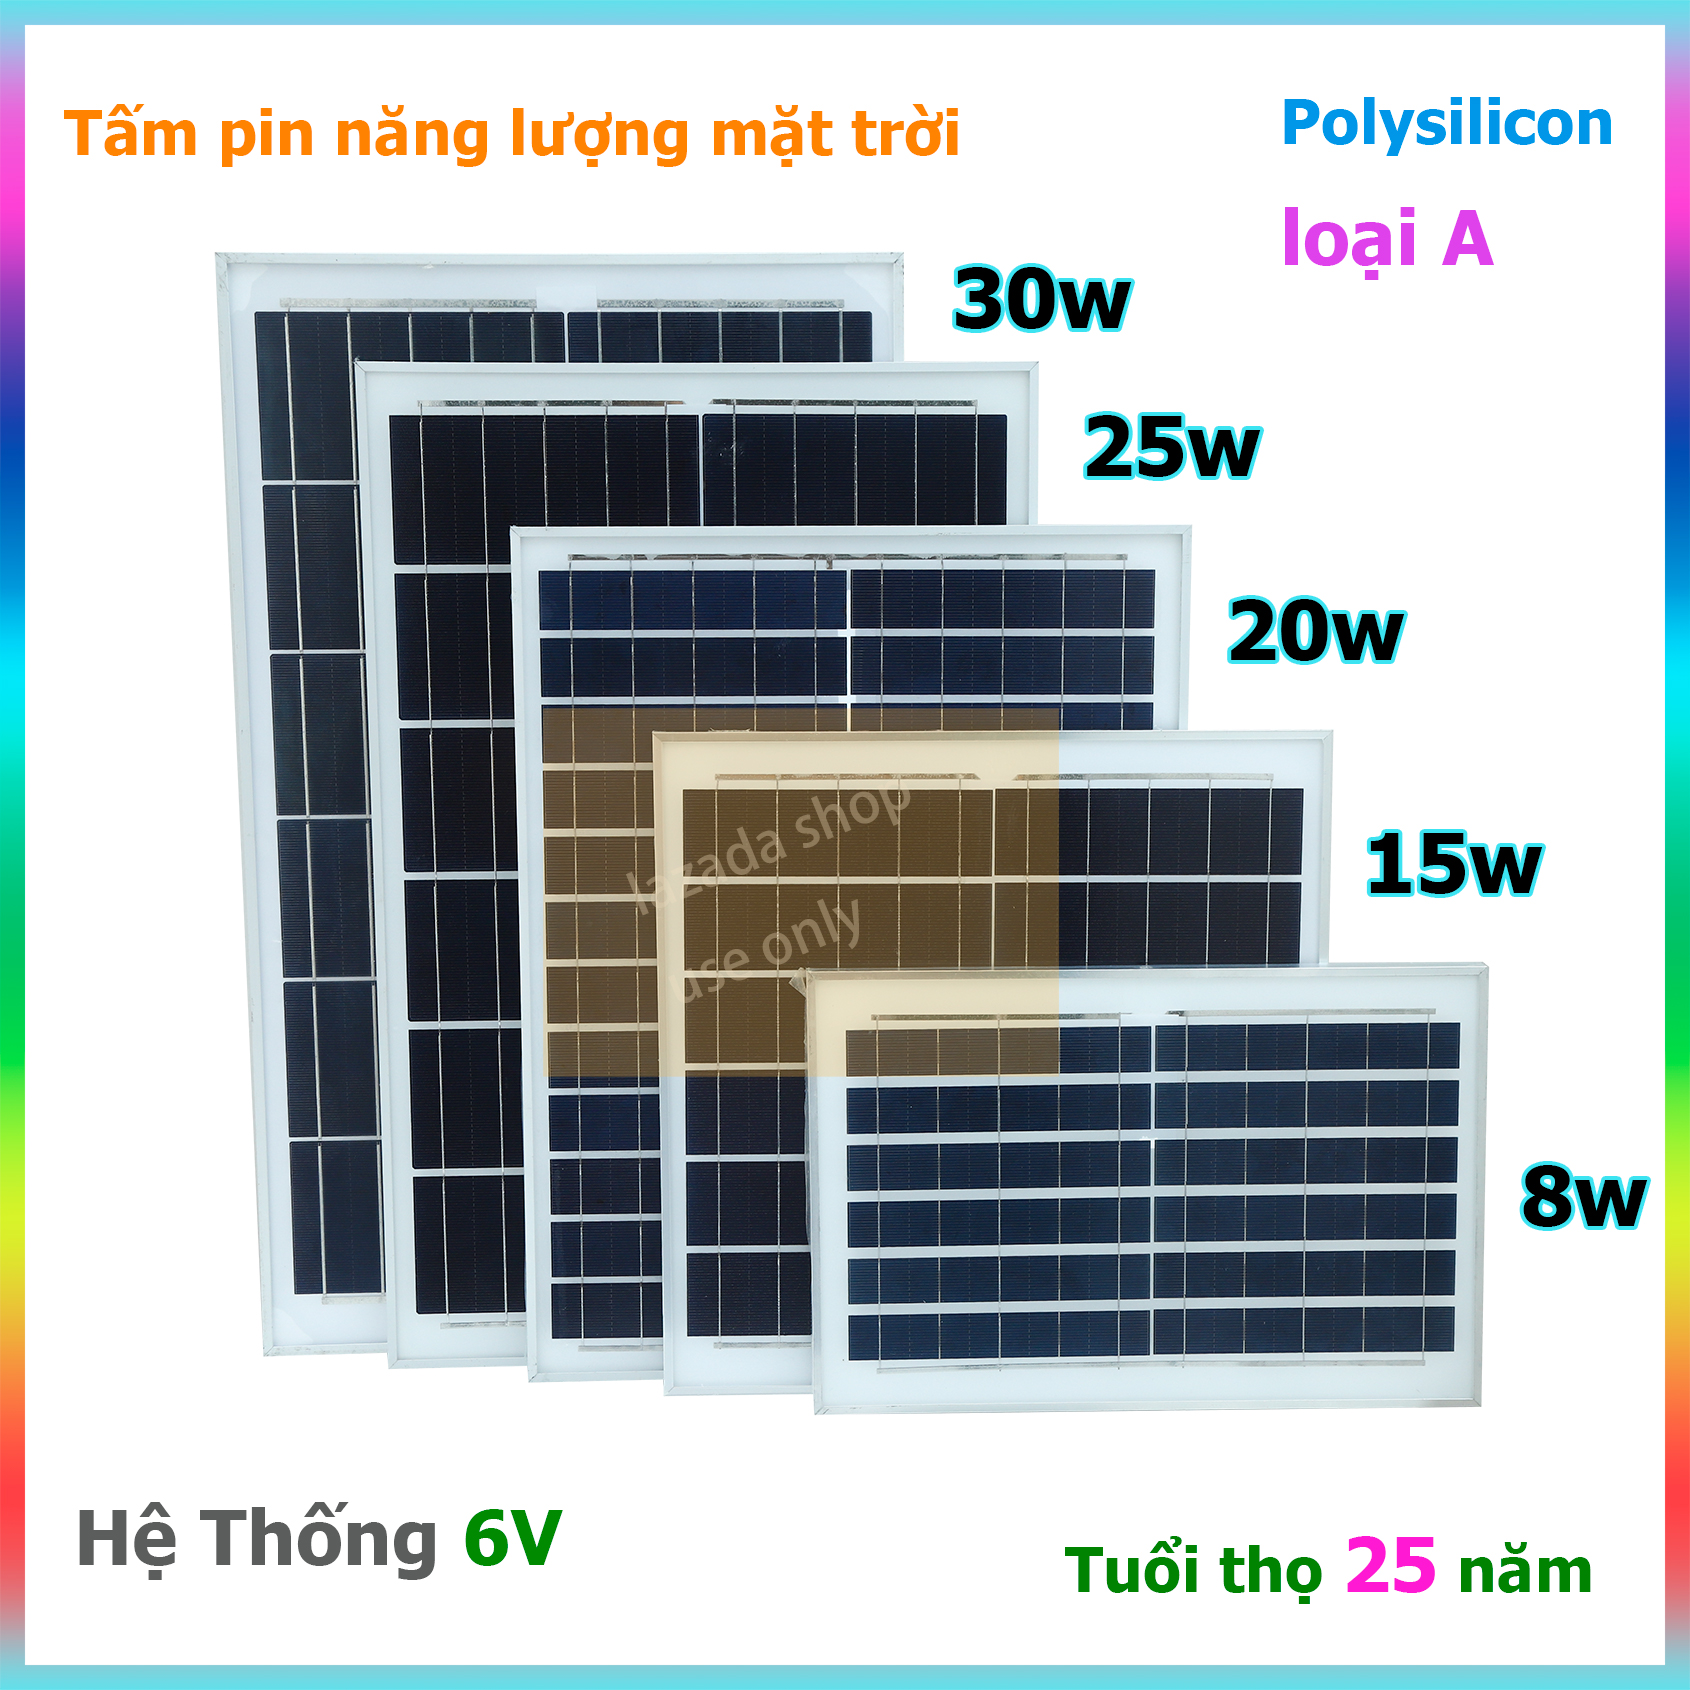 Tấm pin năng lượng mặt trời 20W kèm dây nối dài 5m và khung hình U với ốc